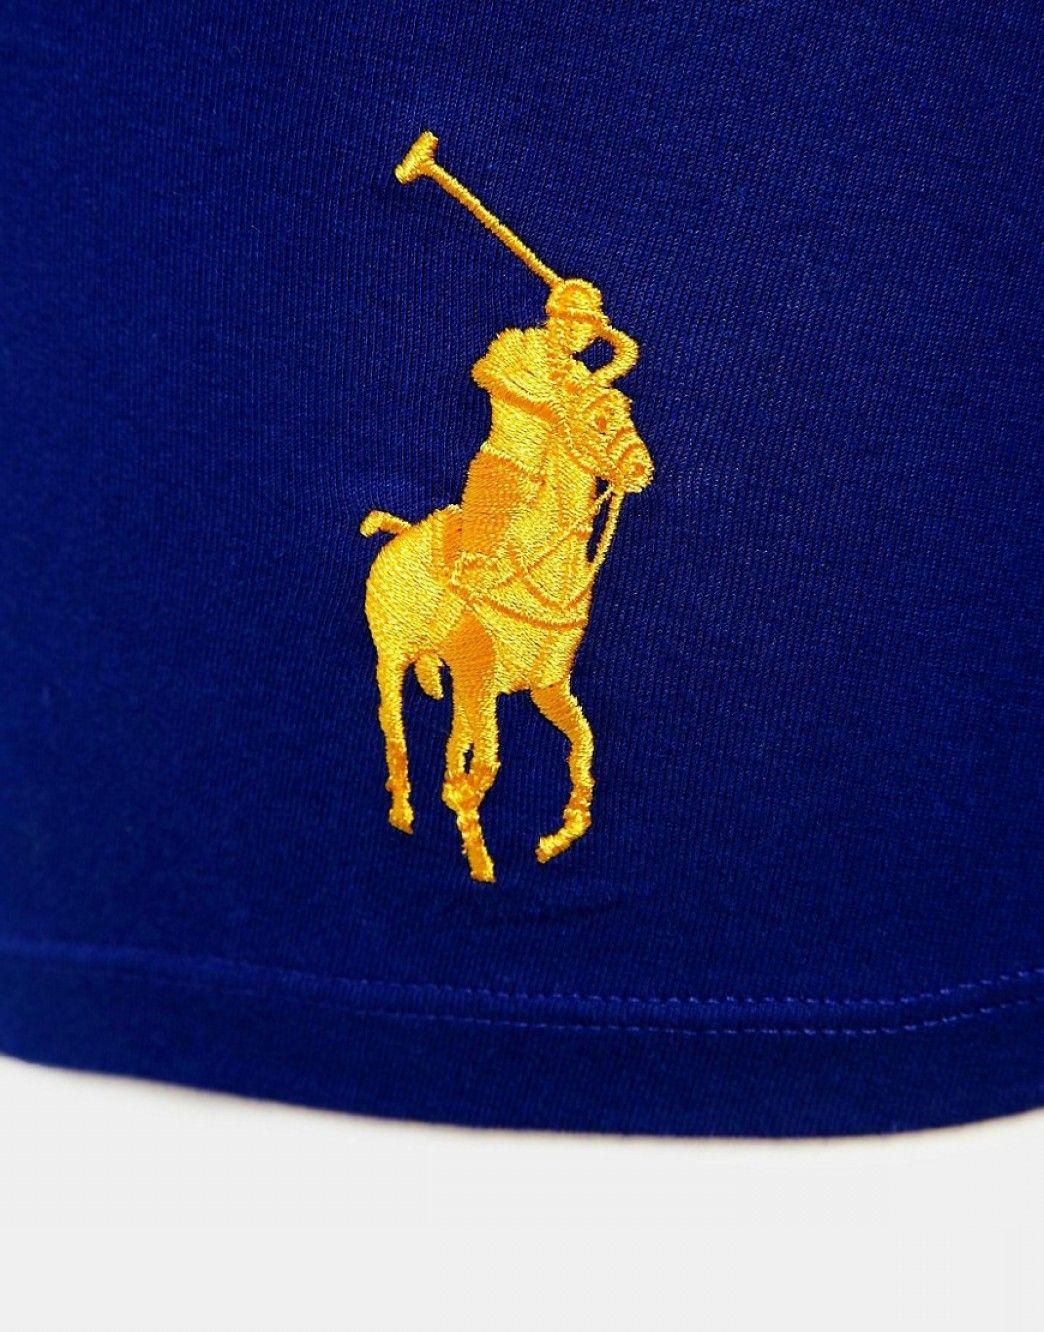 Blue Polo Logo - Polo Ralph Lauren Vector Logo | SHOPATCLOTH